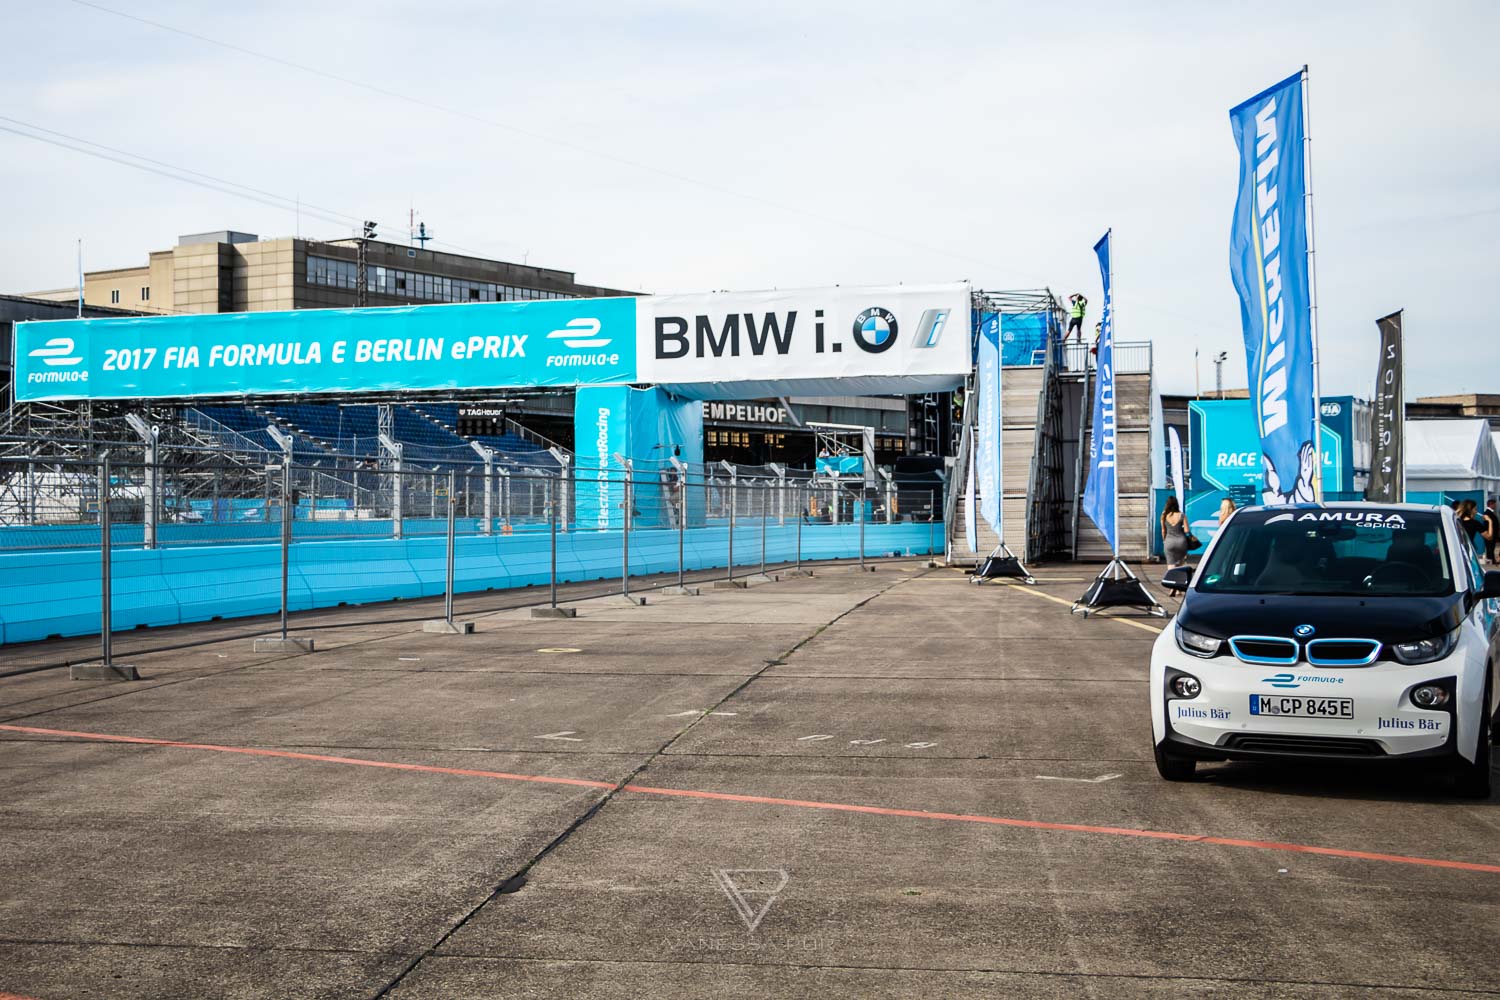 BMW i8 Fahrerlebnis auf der Formel E Rennstrecke in Berlin - Rennstrecke & Fahrerlebnis - HarmanKardon GetElectrified Formel E Grand Prix Berlin - BMW Motorsport Event und Driving Experience mit BMW i8 ECar